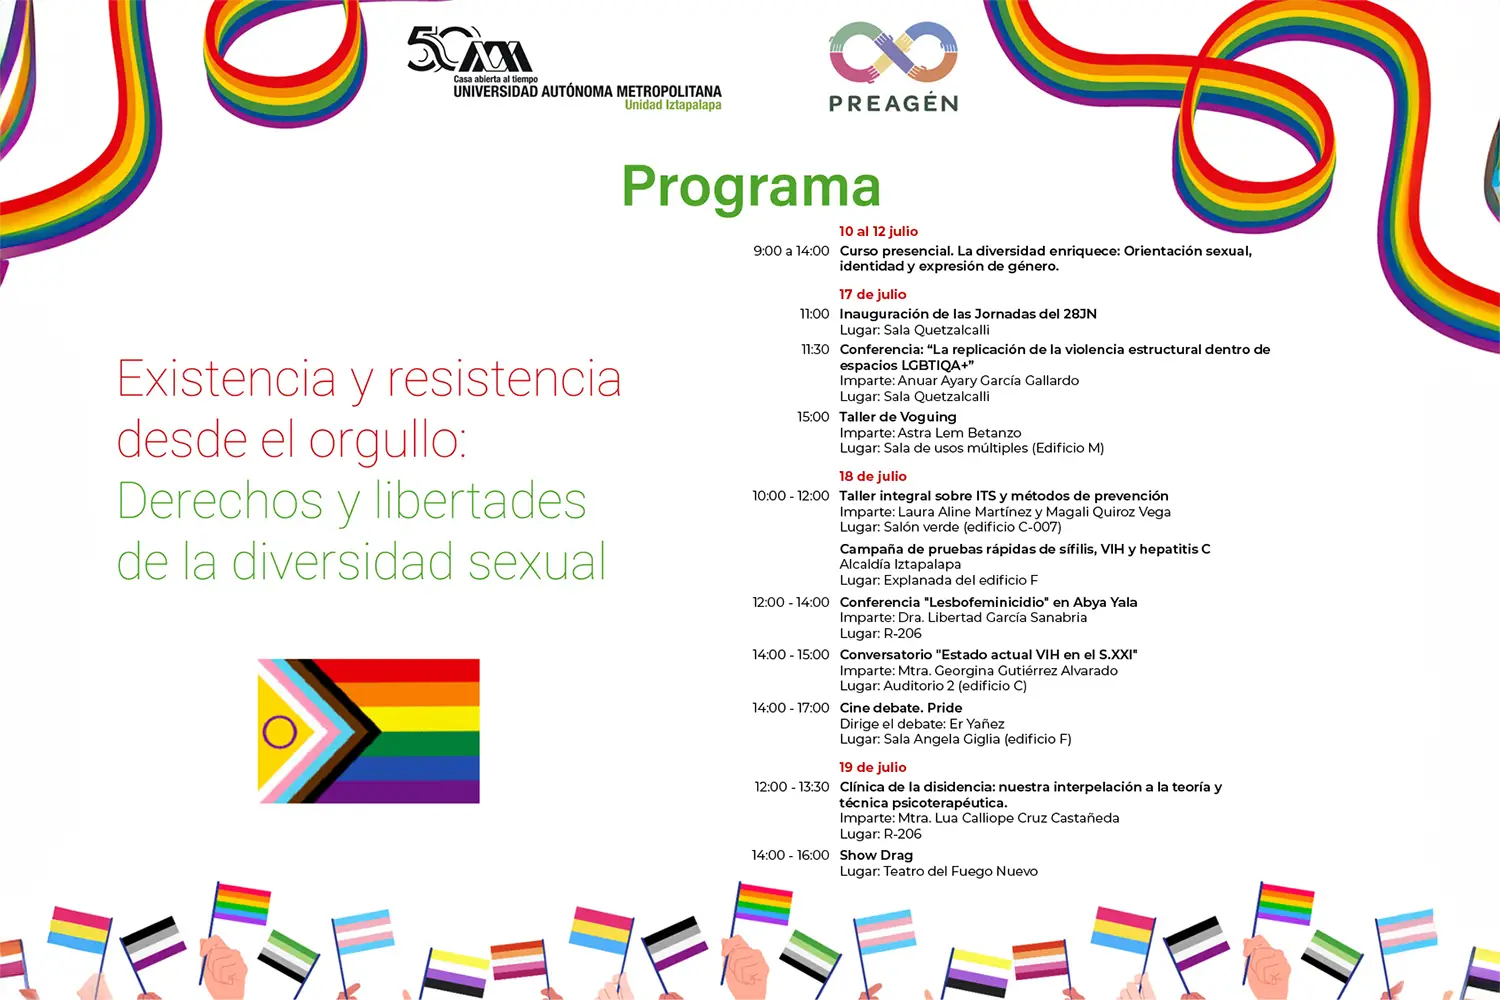 Existencia y resistencia desde el orgullo: Derechos y libertades de la diversidad sexual